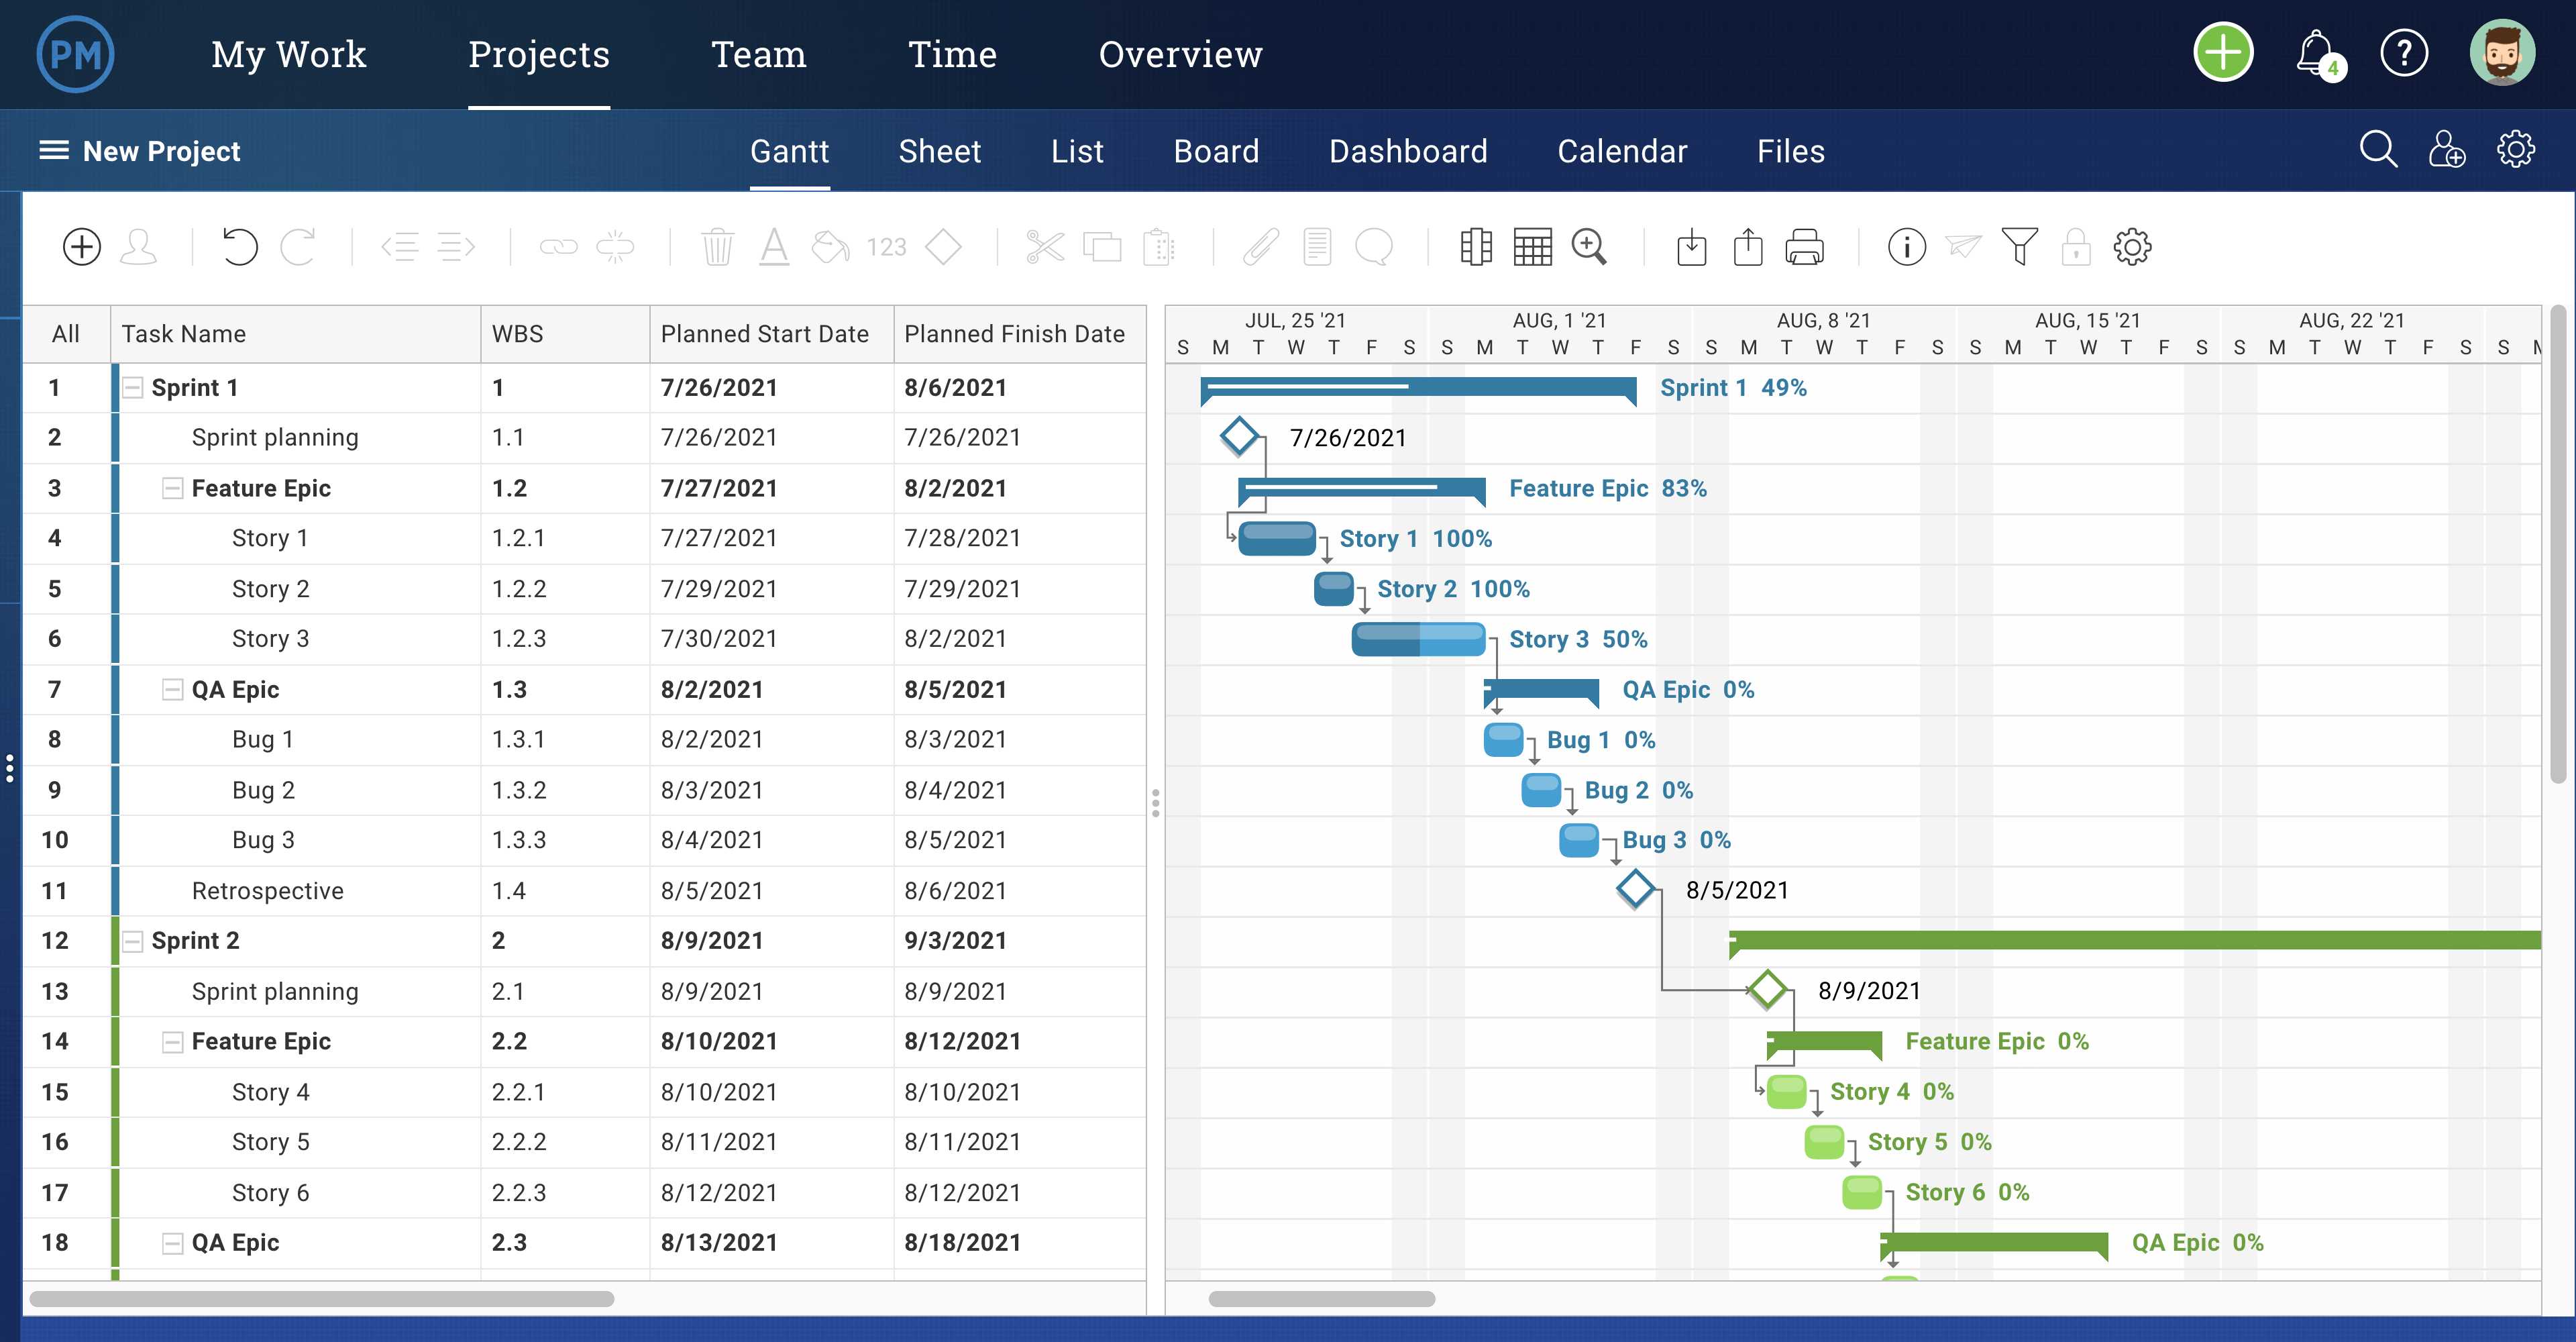 ProjectManager's Gantt chart